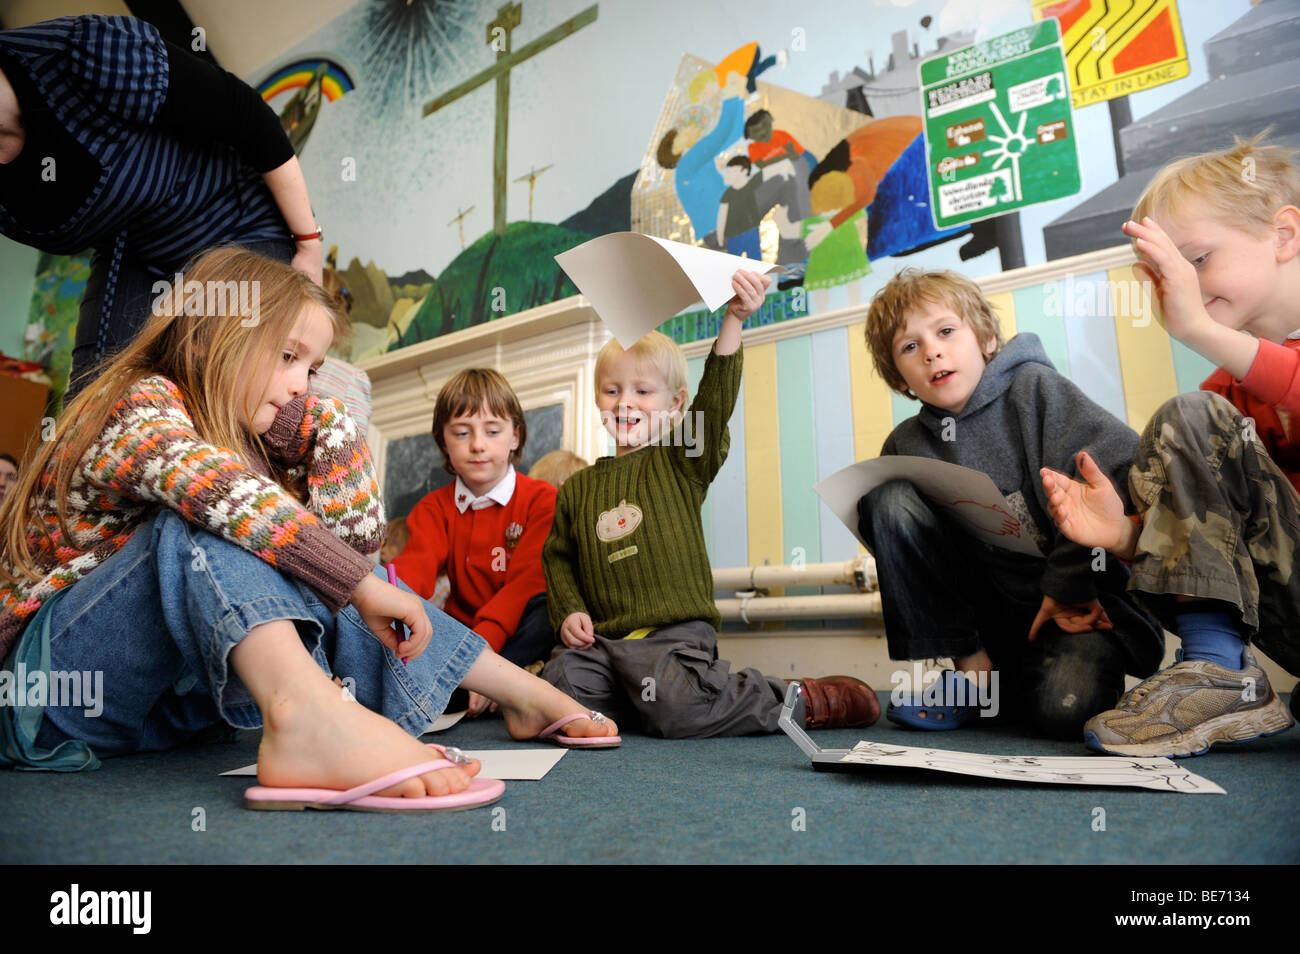 Dessin ENFANTS LES IMAGES D'UN GROUPE À UNE ÉCOLE DU DIMANCHE UK Banque D'Images